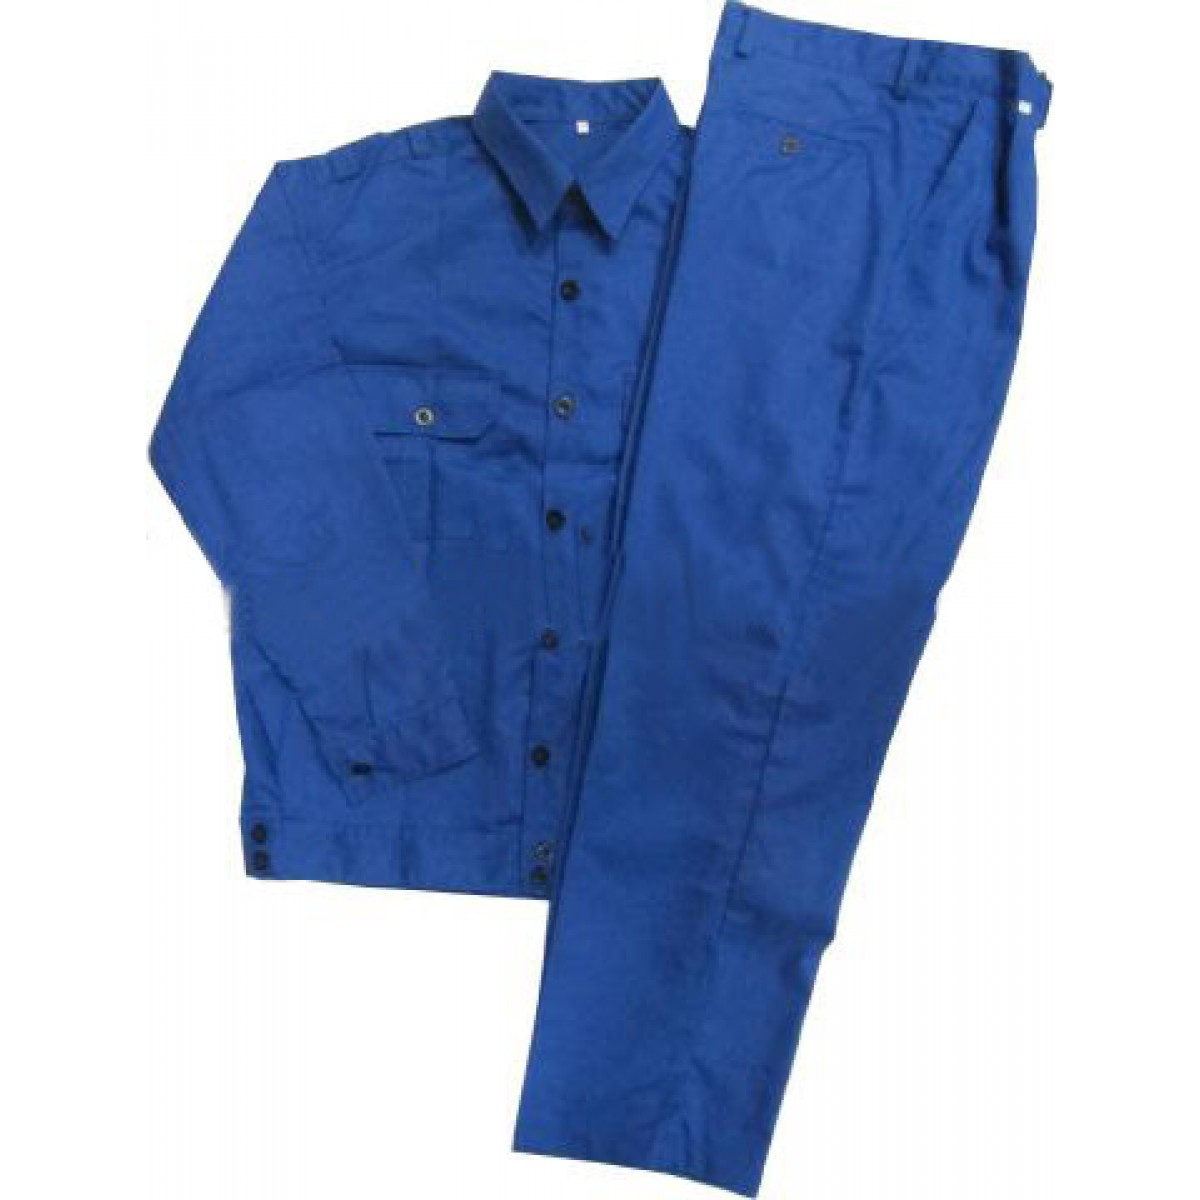 Bộ áo và quần bảo hộ lao động vải kaki xanh công nhân